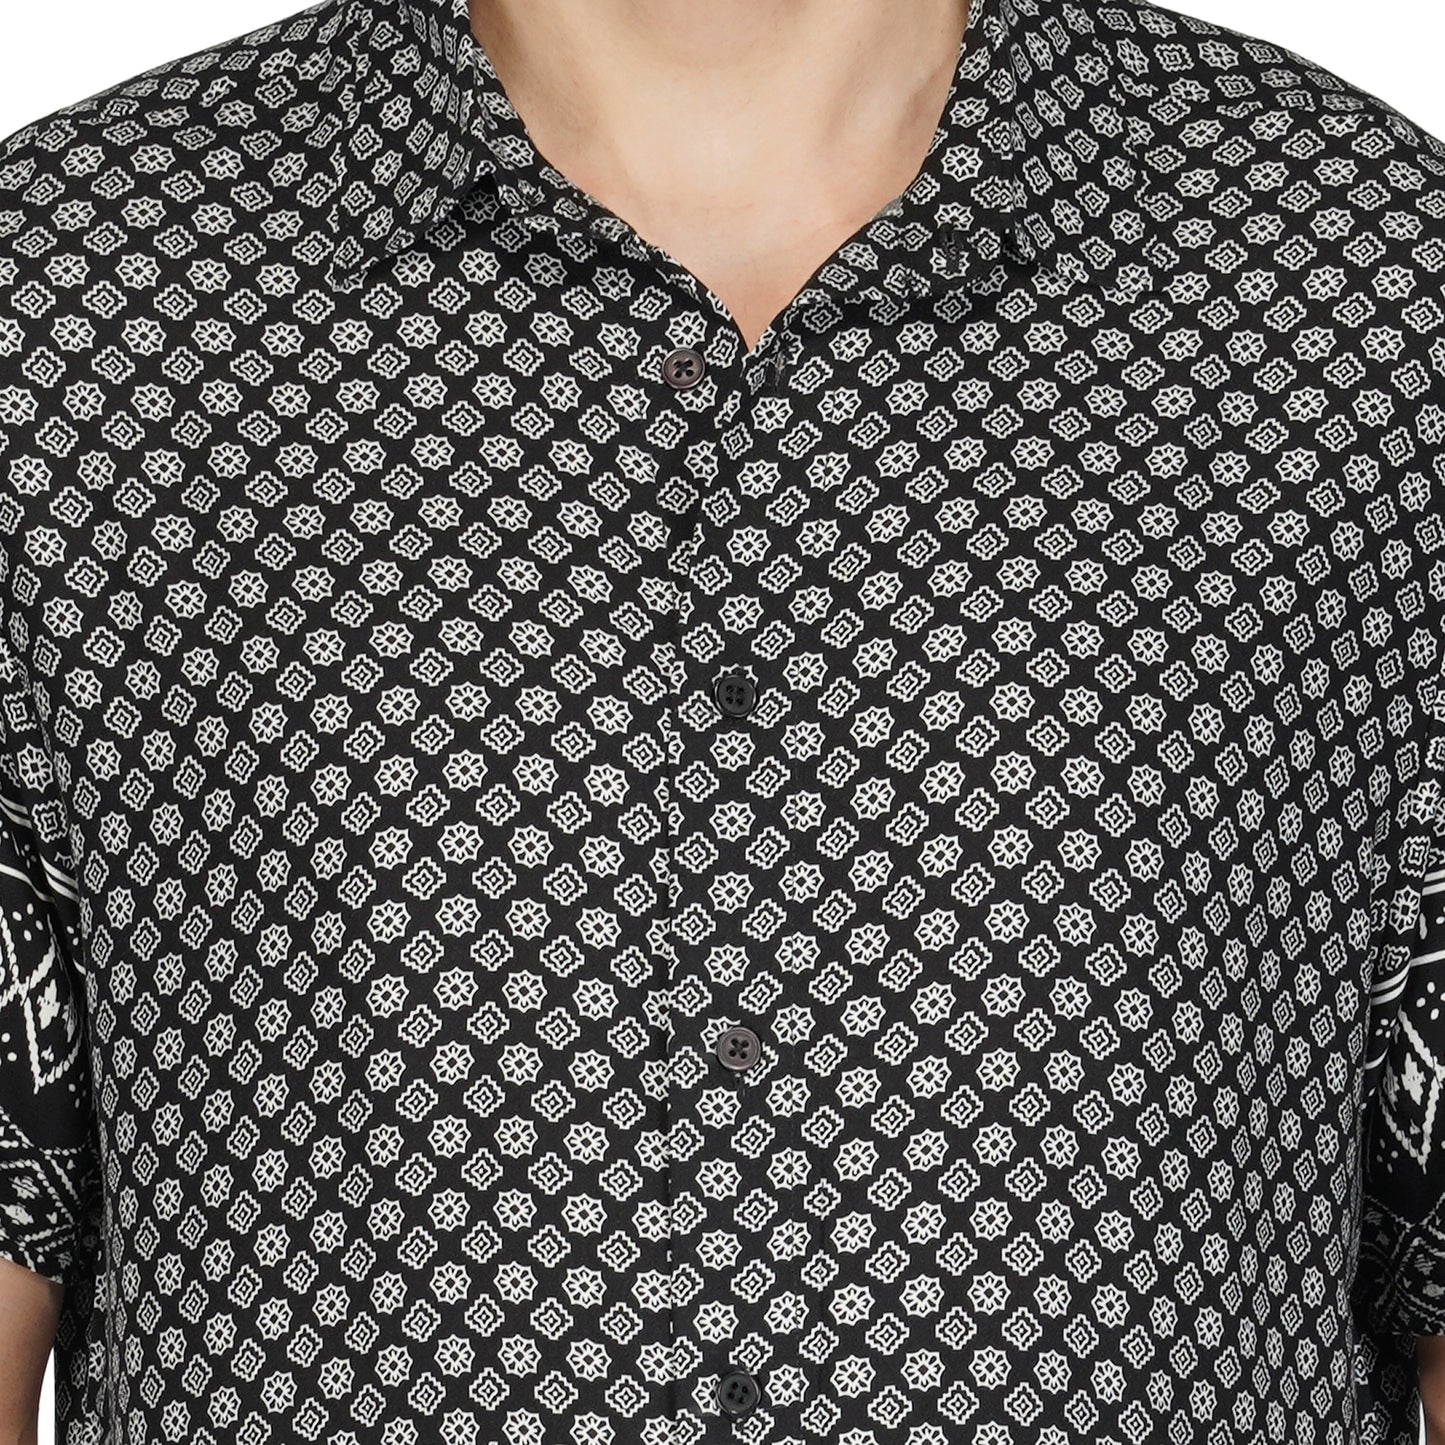 SLAY. Men's Black & White Print Designer Shirt